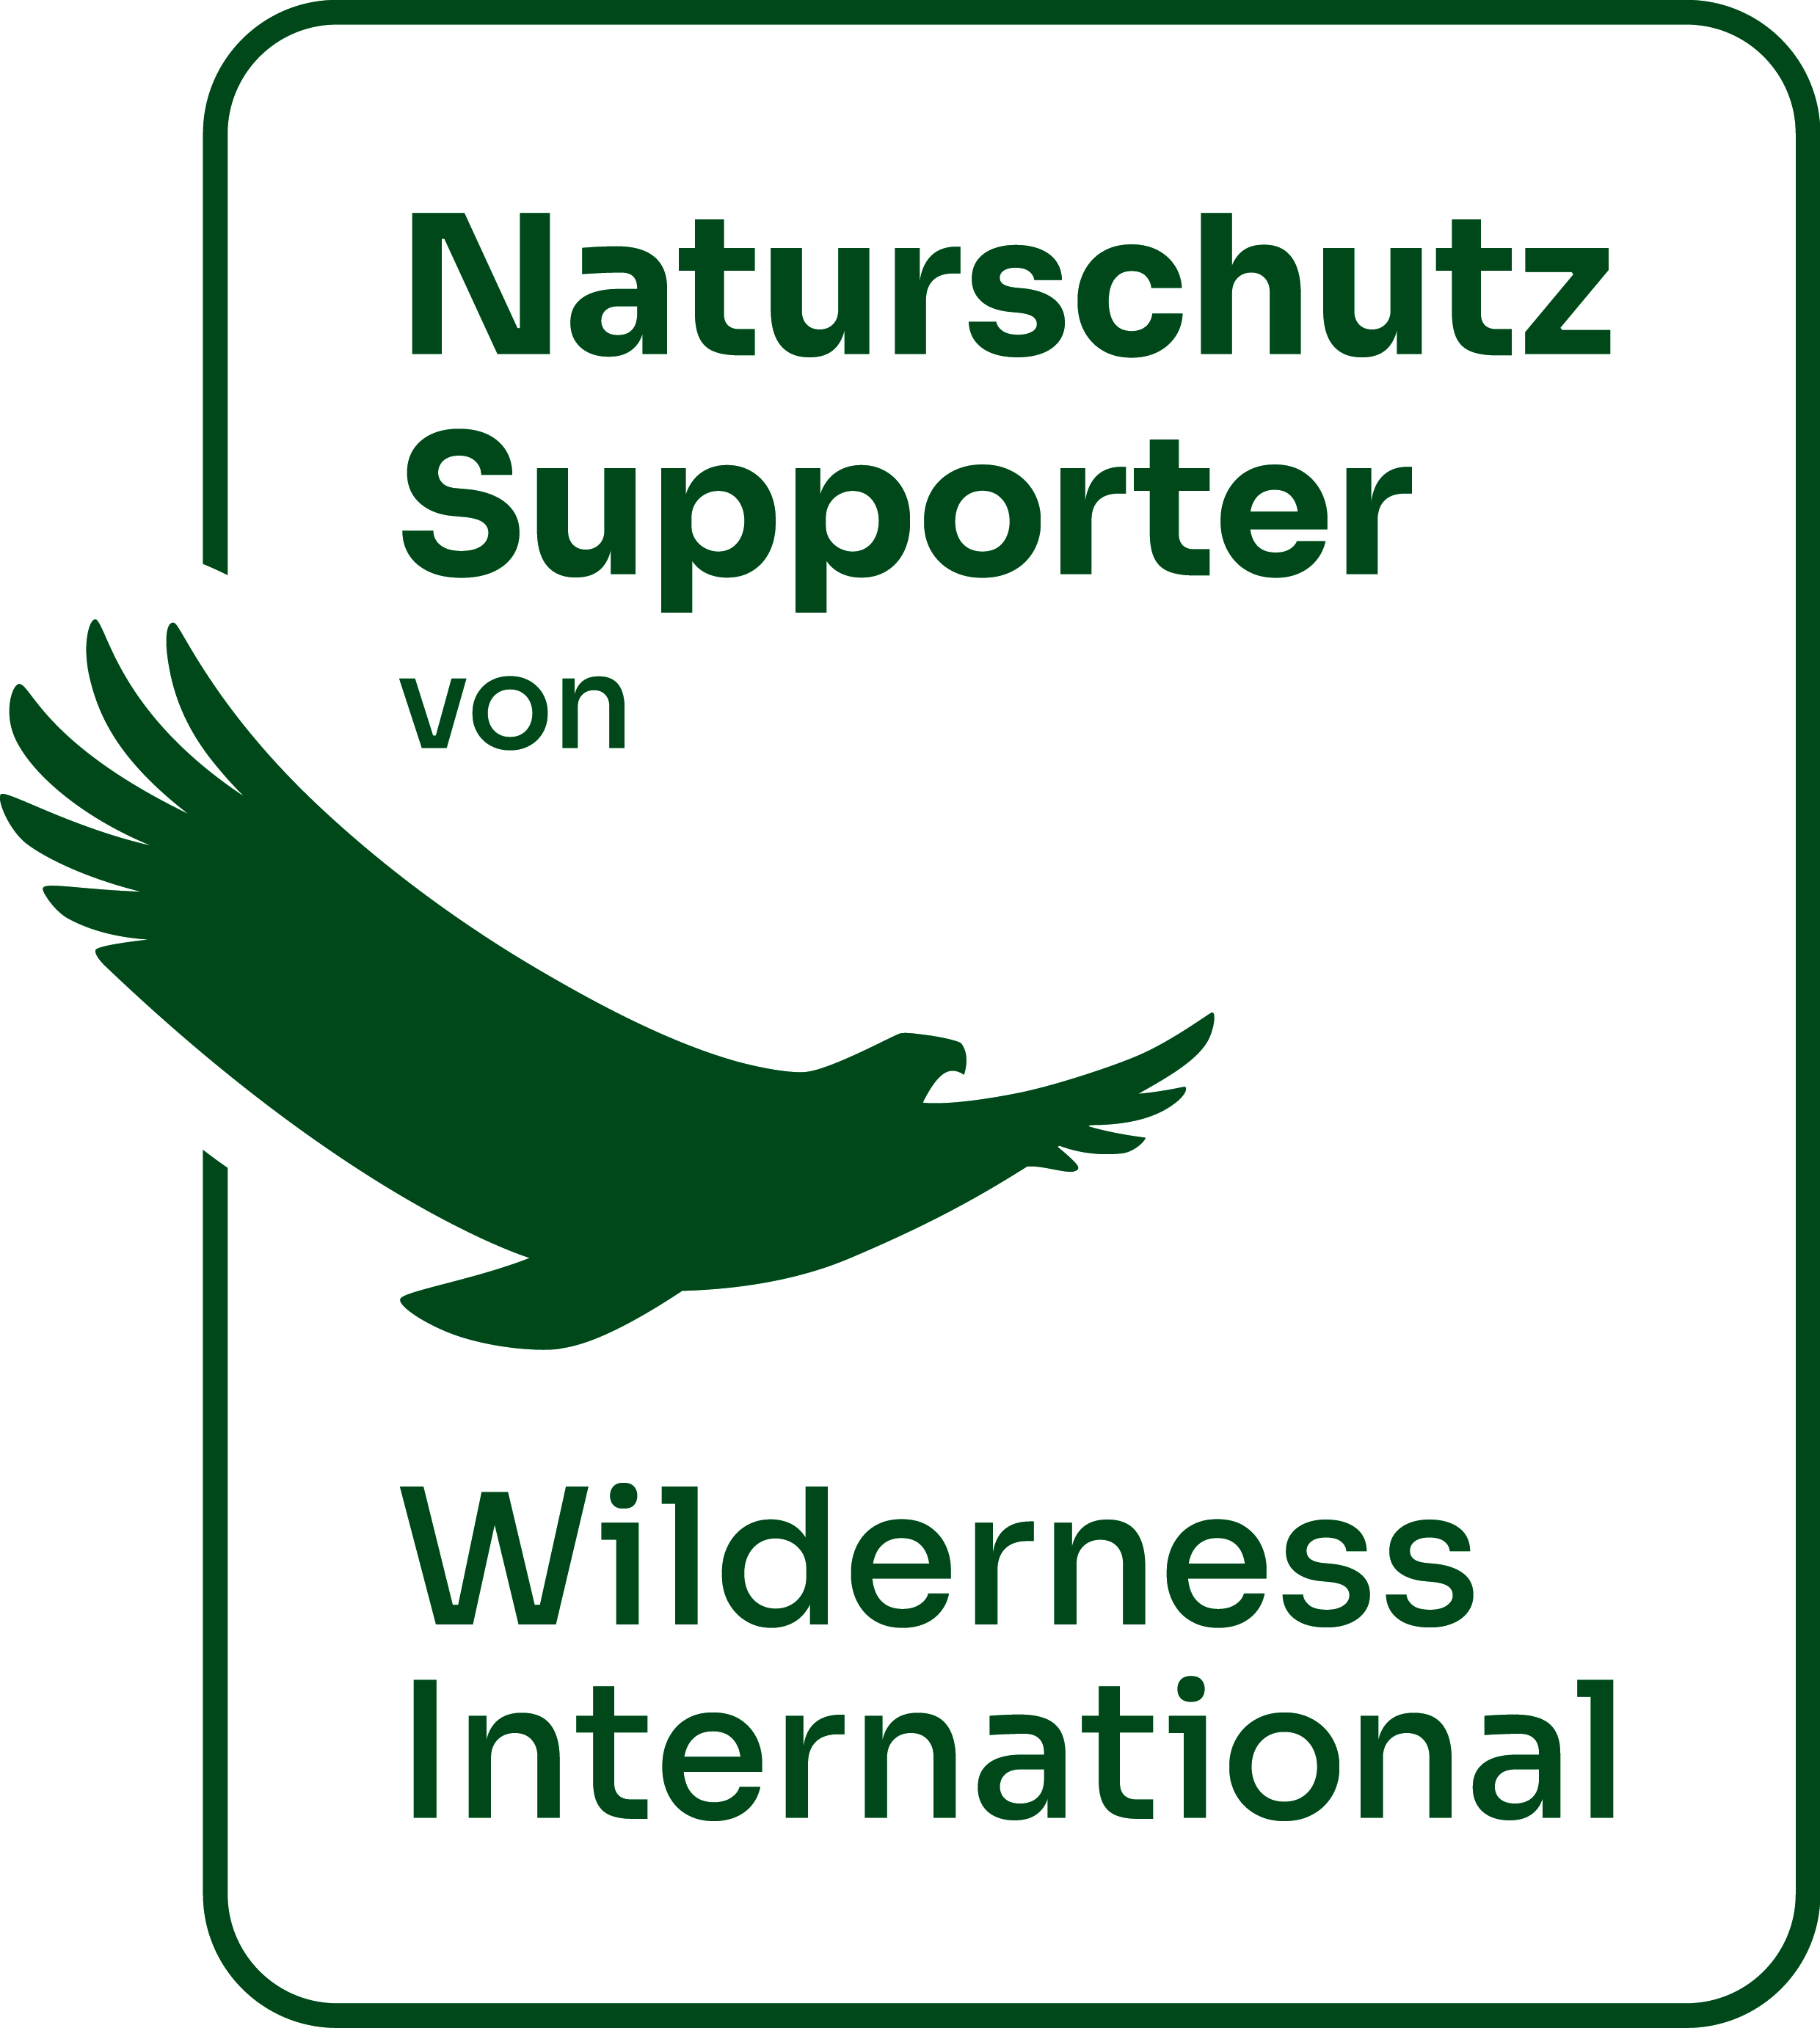 Wilderness International Supporter